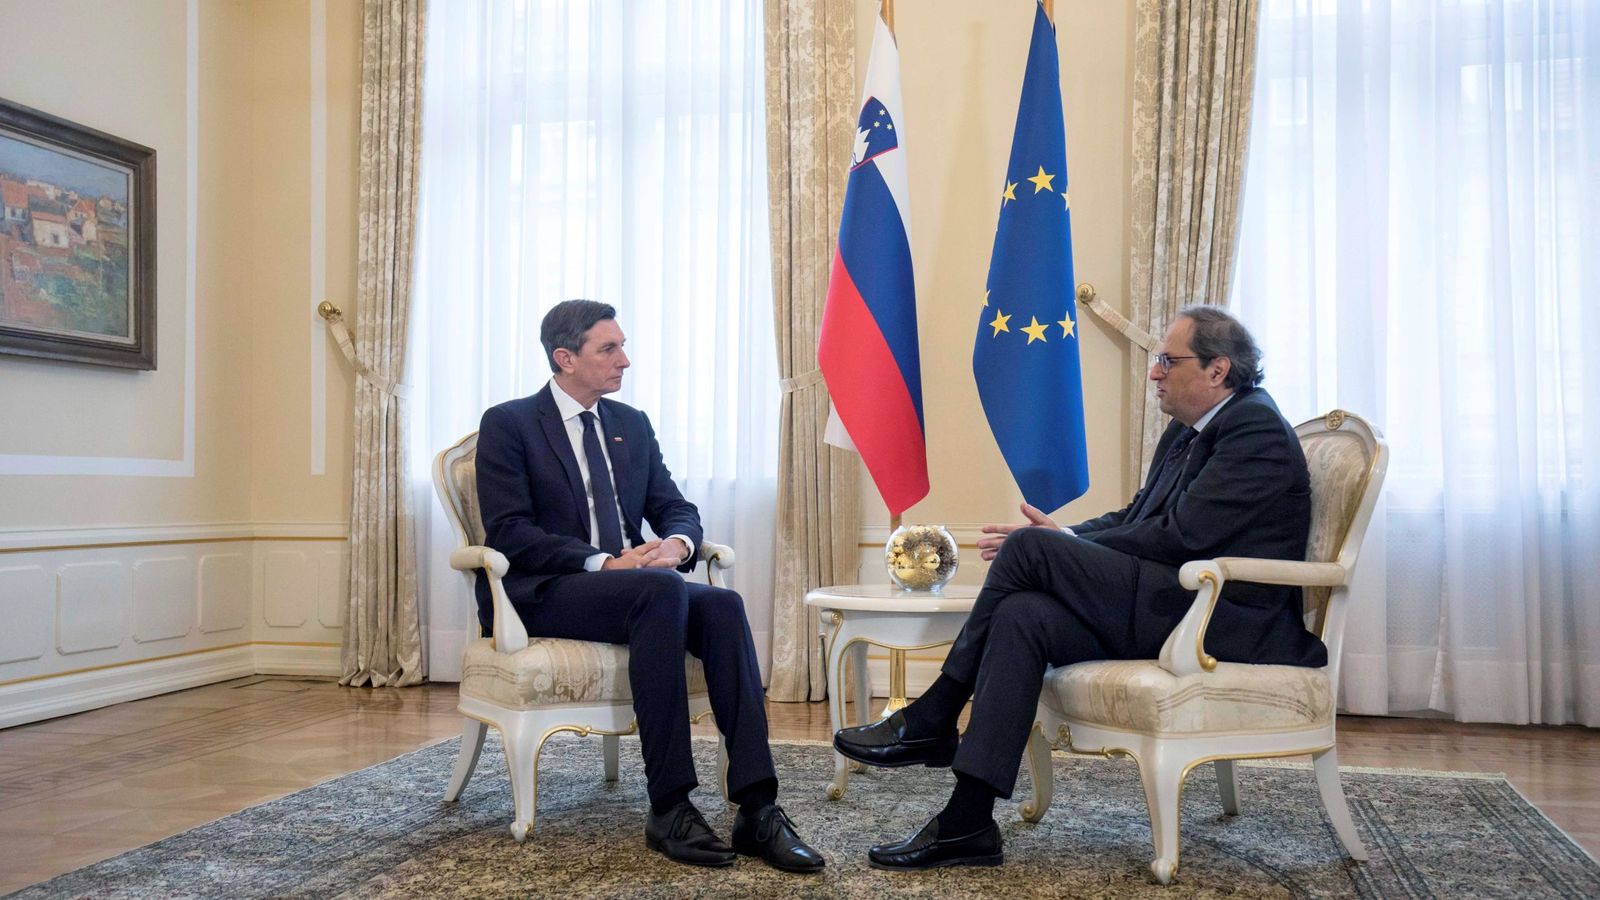 Foto: El presidente de la Generalitat, Quim Torra, durante la reunión con el presidente de Eslovenia, Borut Pahor. (Cedida por la Presidencia de la Generalitat)